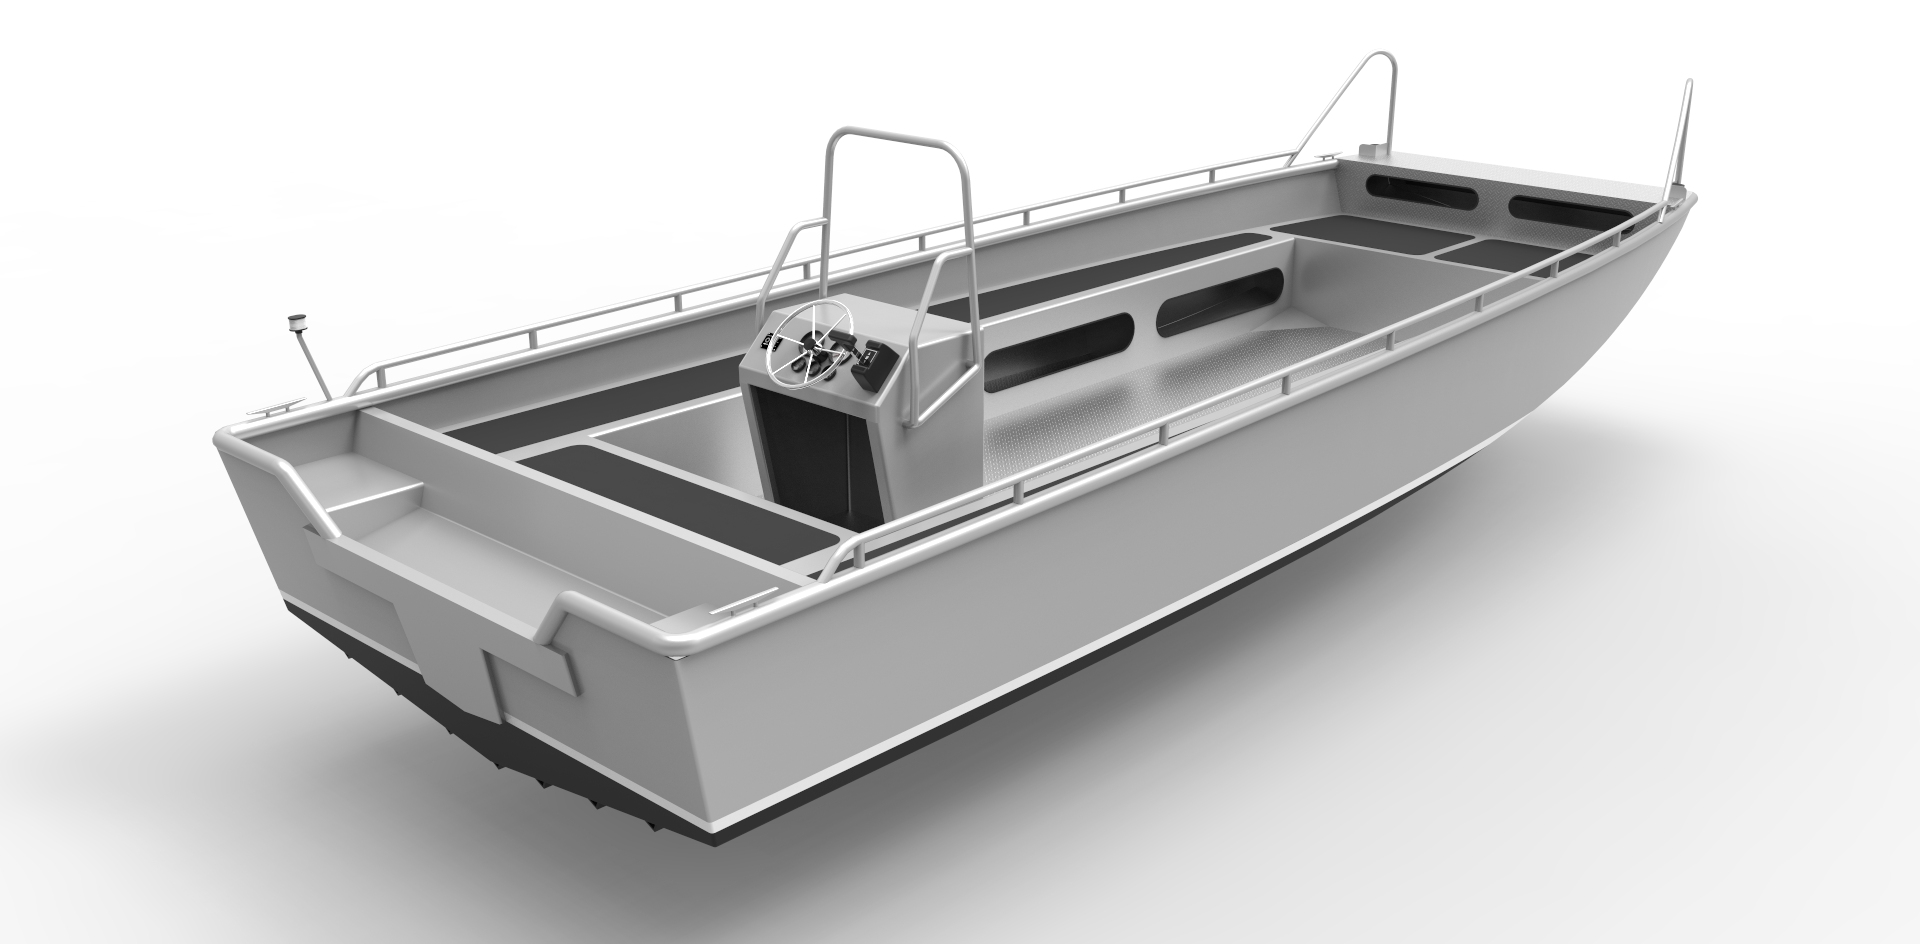 6m (19ft) Aluminum Lifeboat - Stylized Jon Boat - Welded Aluminum Alloy CNC...